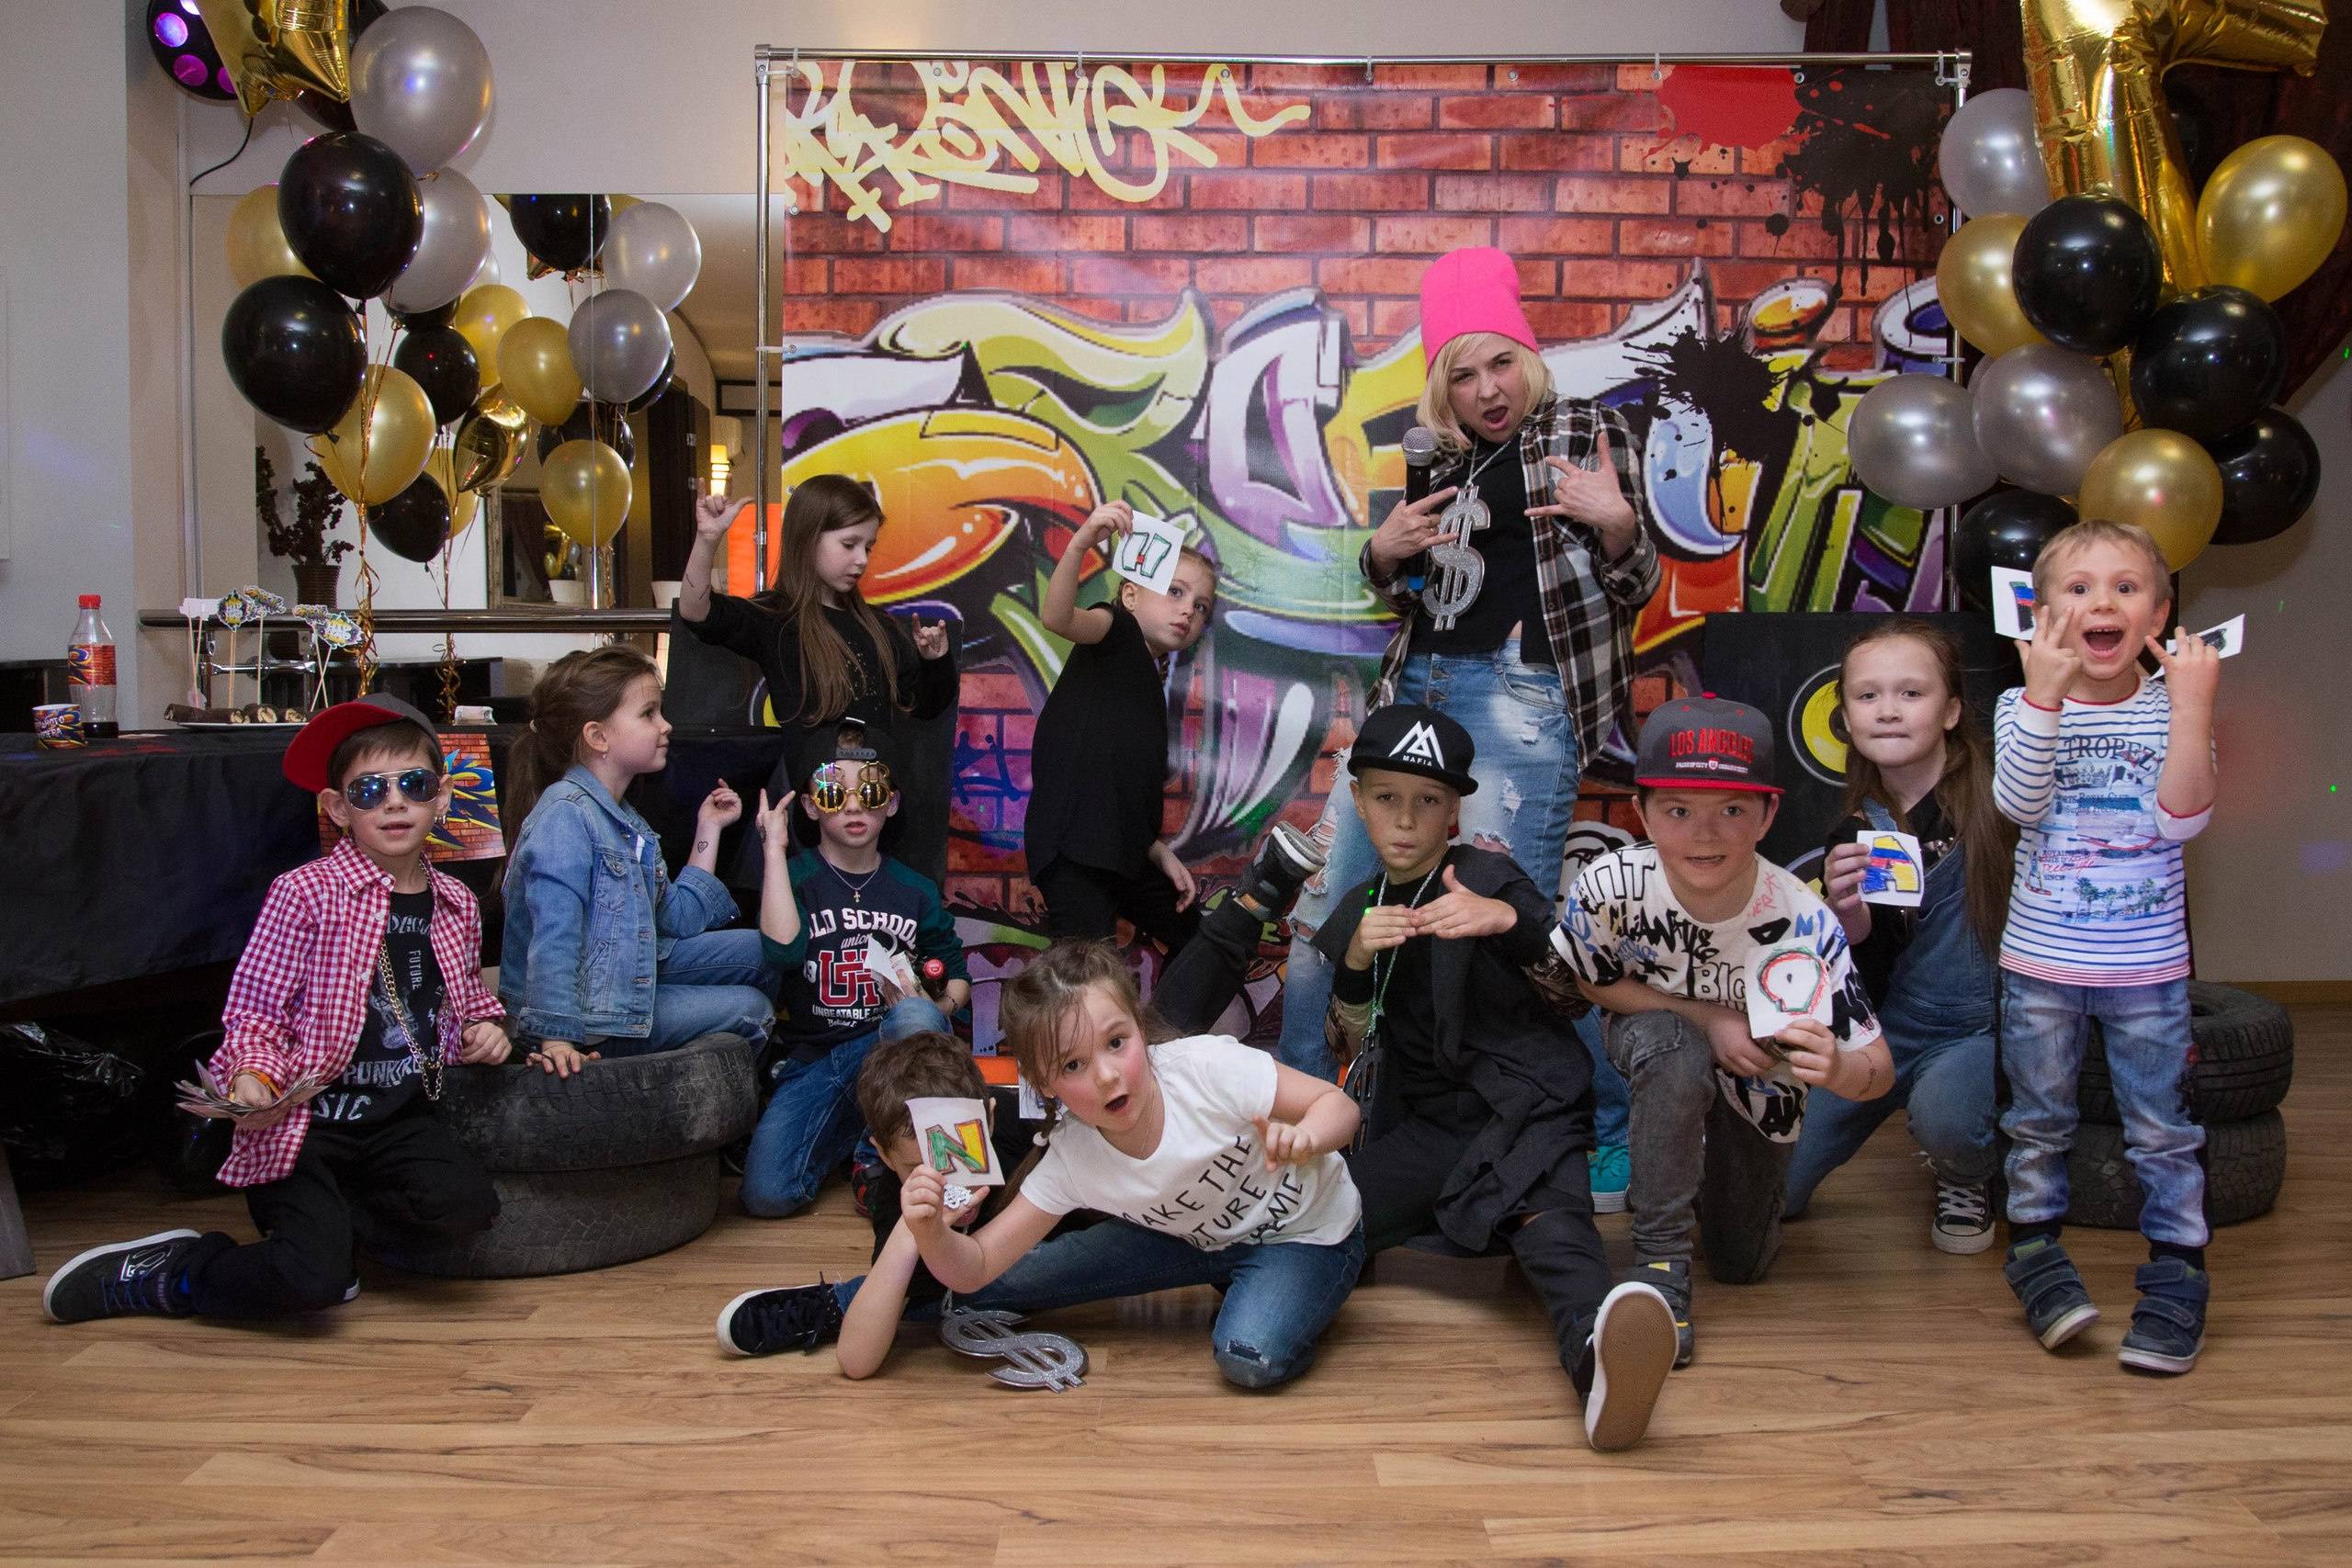 Хип-хоп день рождения: рэп, граффити и бит-бокс